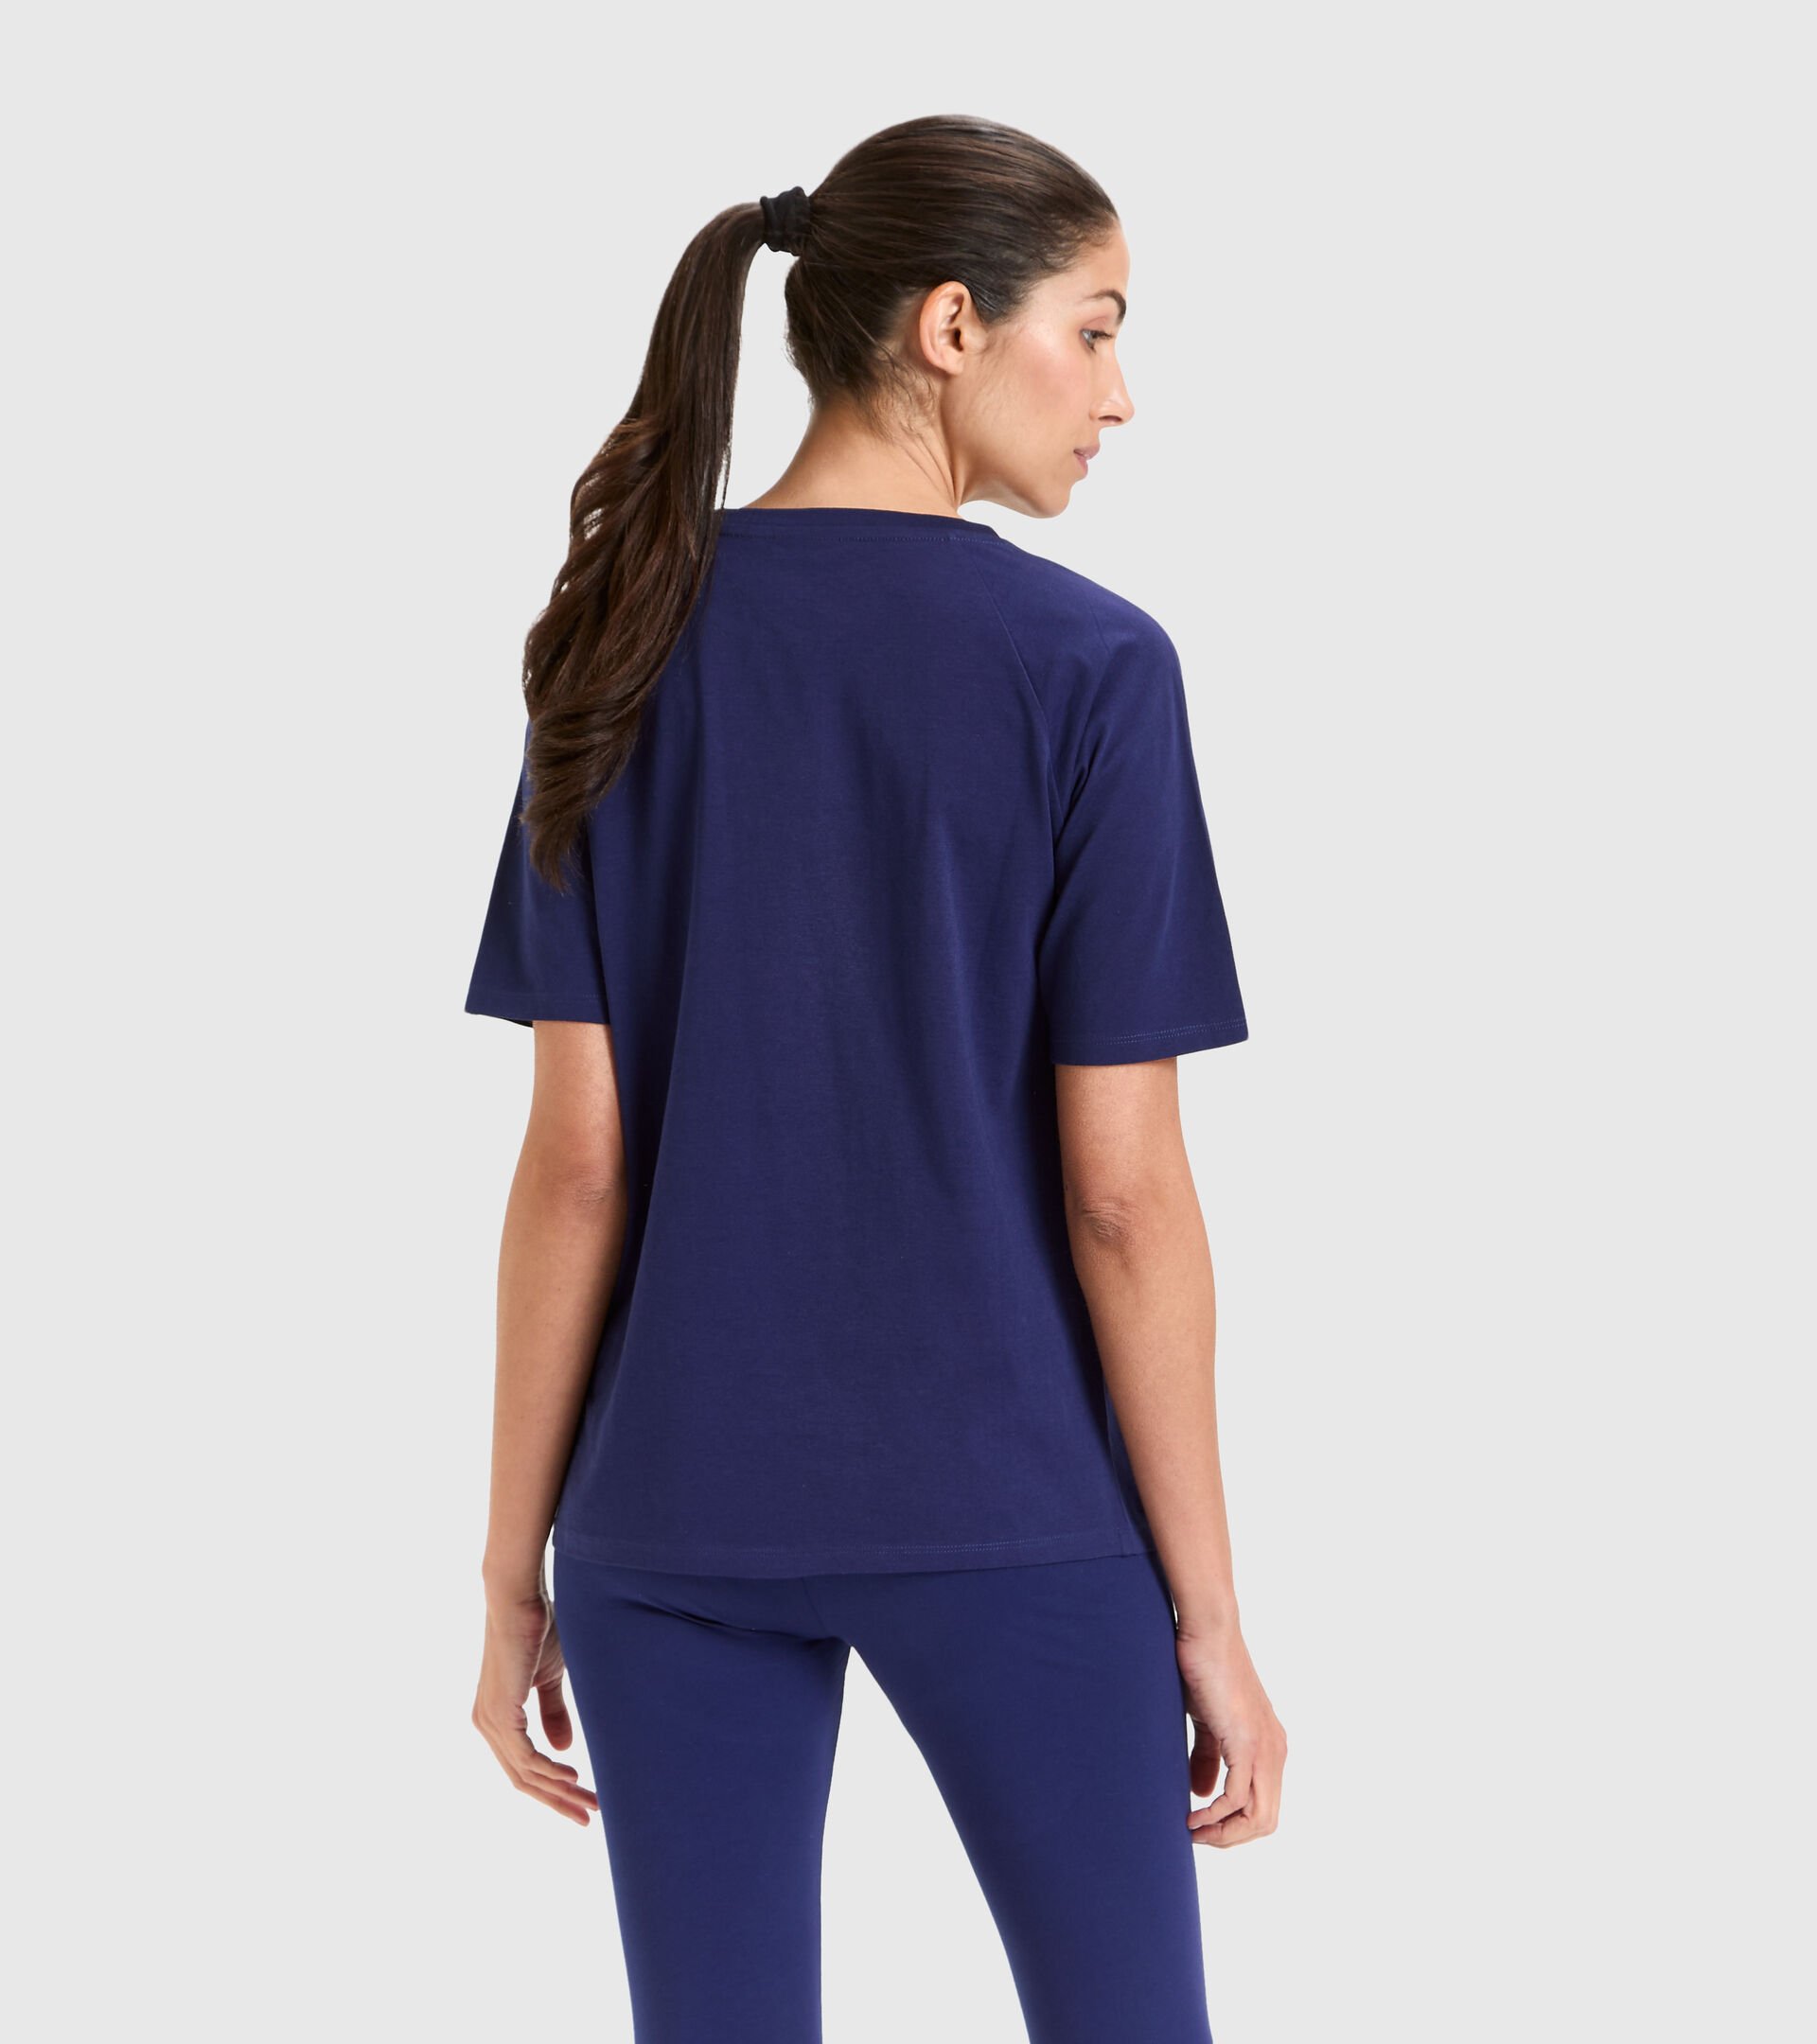 Camiseta deportiva de algodón - Mujer L.T-SHIRT SS CHROMIA PROFUNDO COBALTO - Diadora